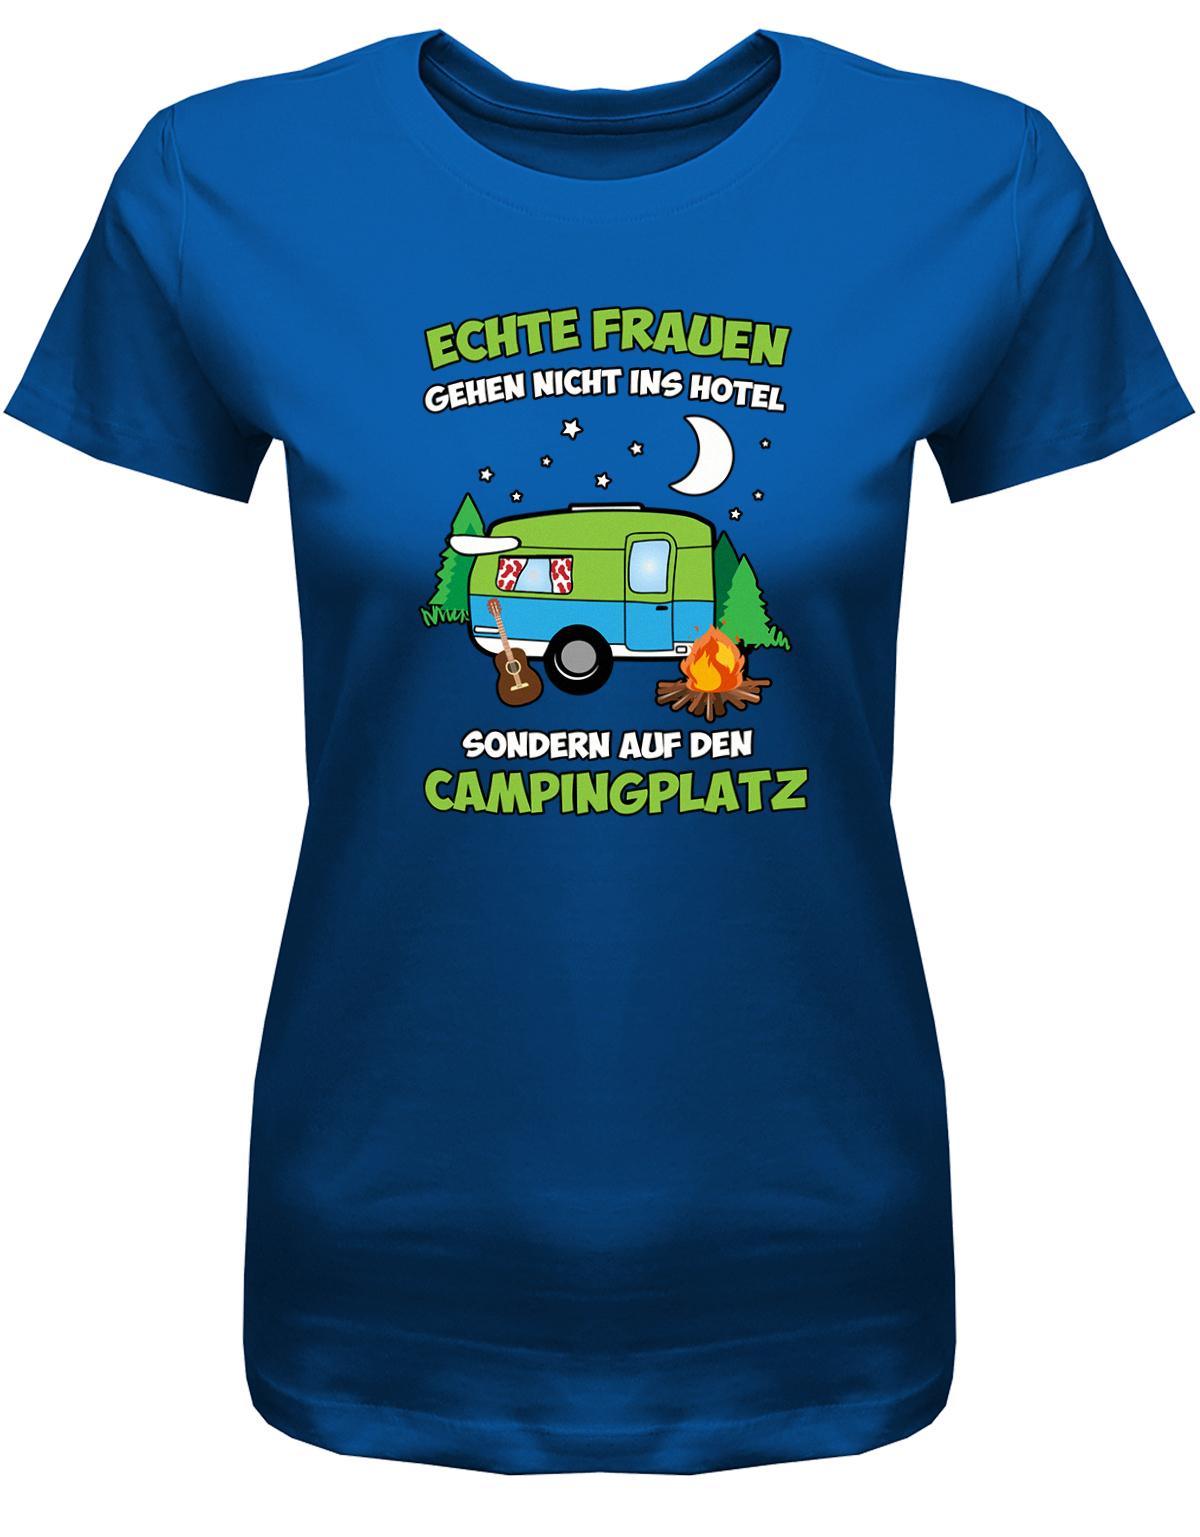 Echte-Frauen-gehen-nicht-ins-Hotel-sondern-aufn-Campingplatz-Damen-Shirt-royalblau